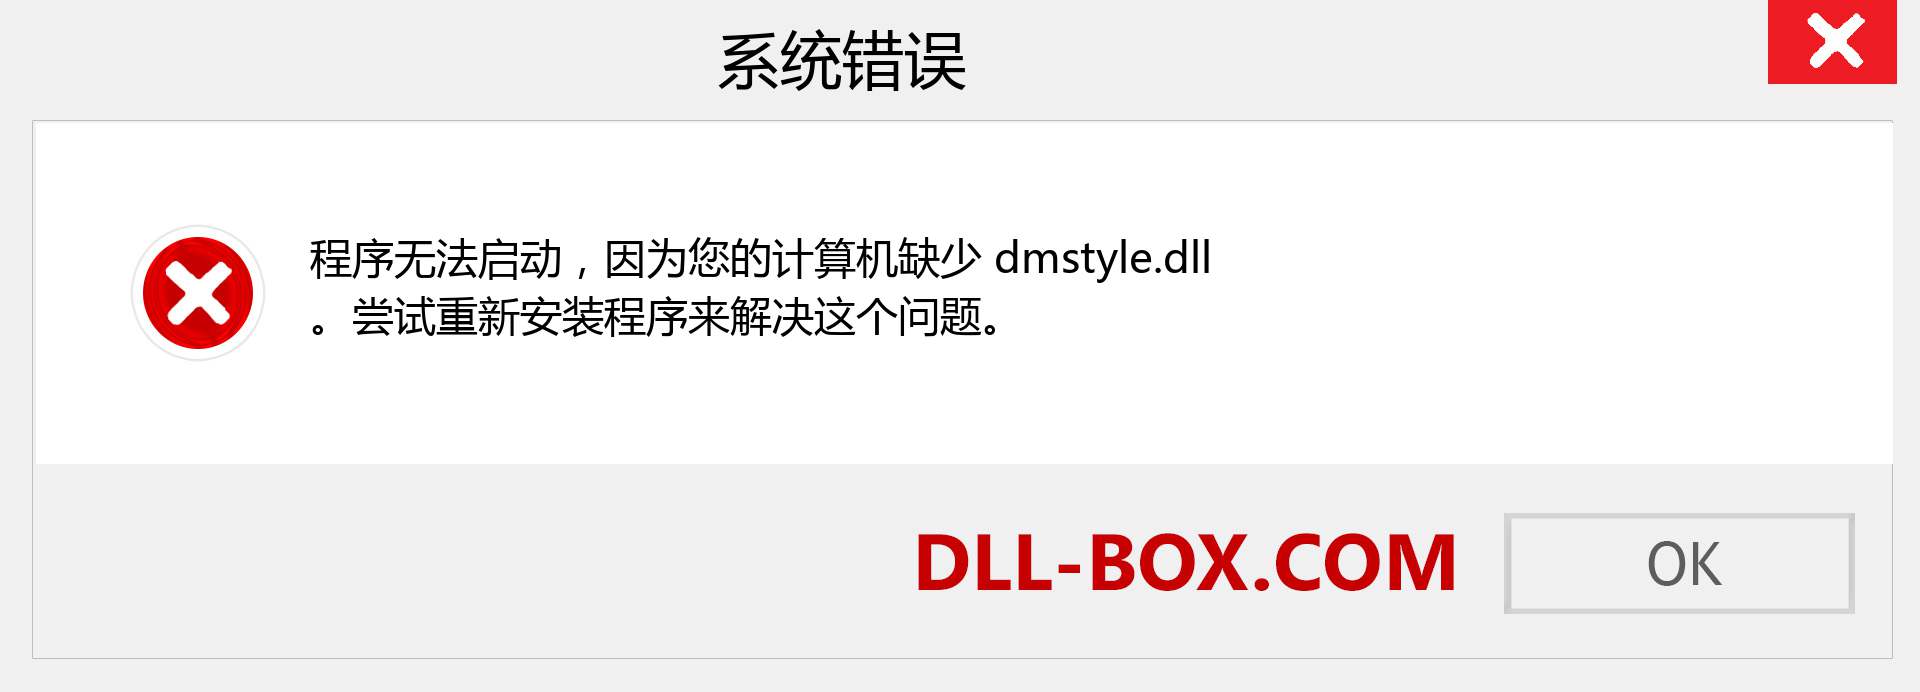 dmstyle.dll 文件丢失？。 适用于 Windows 7、8、10 的下载 - 修复 Windows、照片、图像上的 dmstyle dll 丢失错误